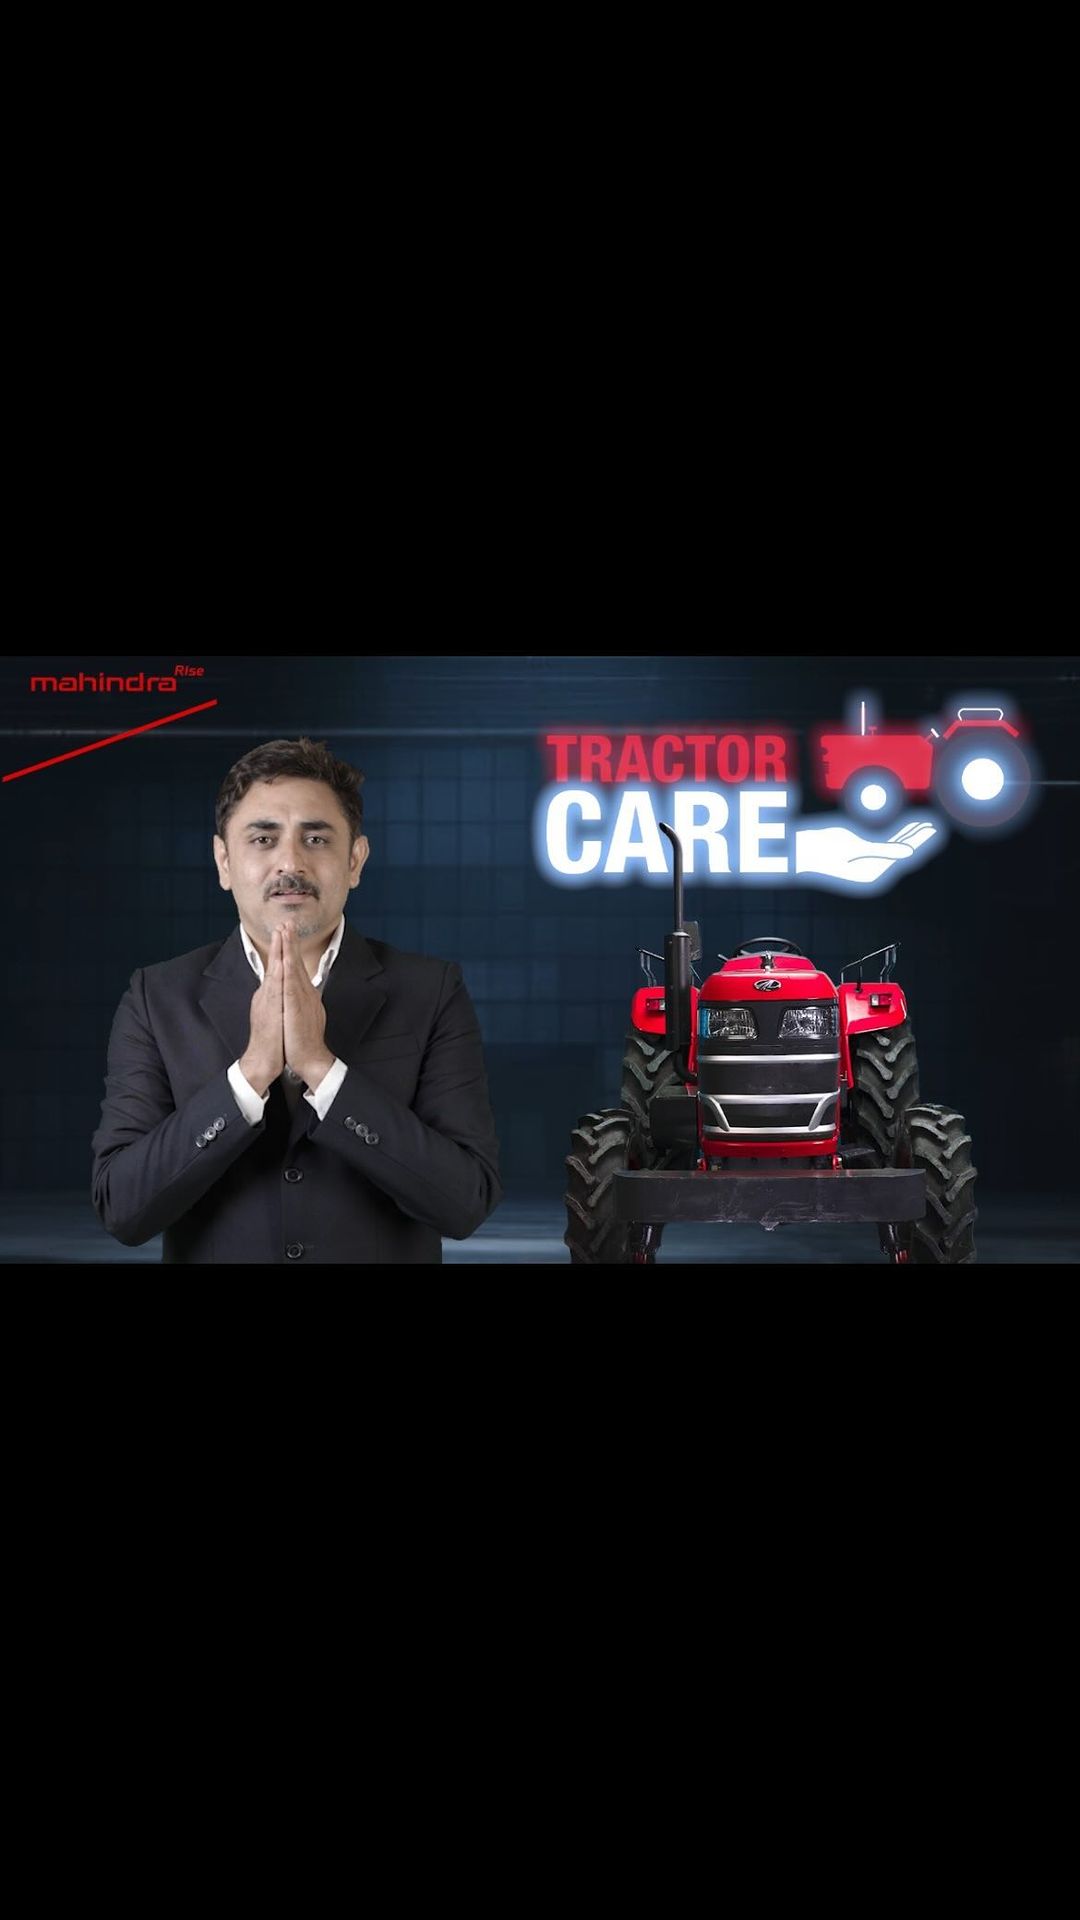 ट्रैक्टर टायर में सही प्रेशर मतलब आप पे नो प्रेशर! टायर प्रेशर के बारें में अधिक जानकारी के लिए वीडियो देखें।
#MahindraT...